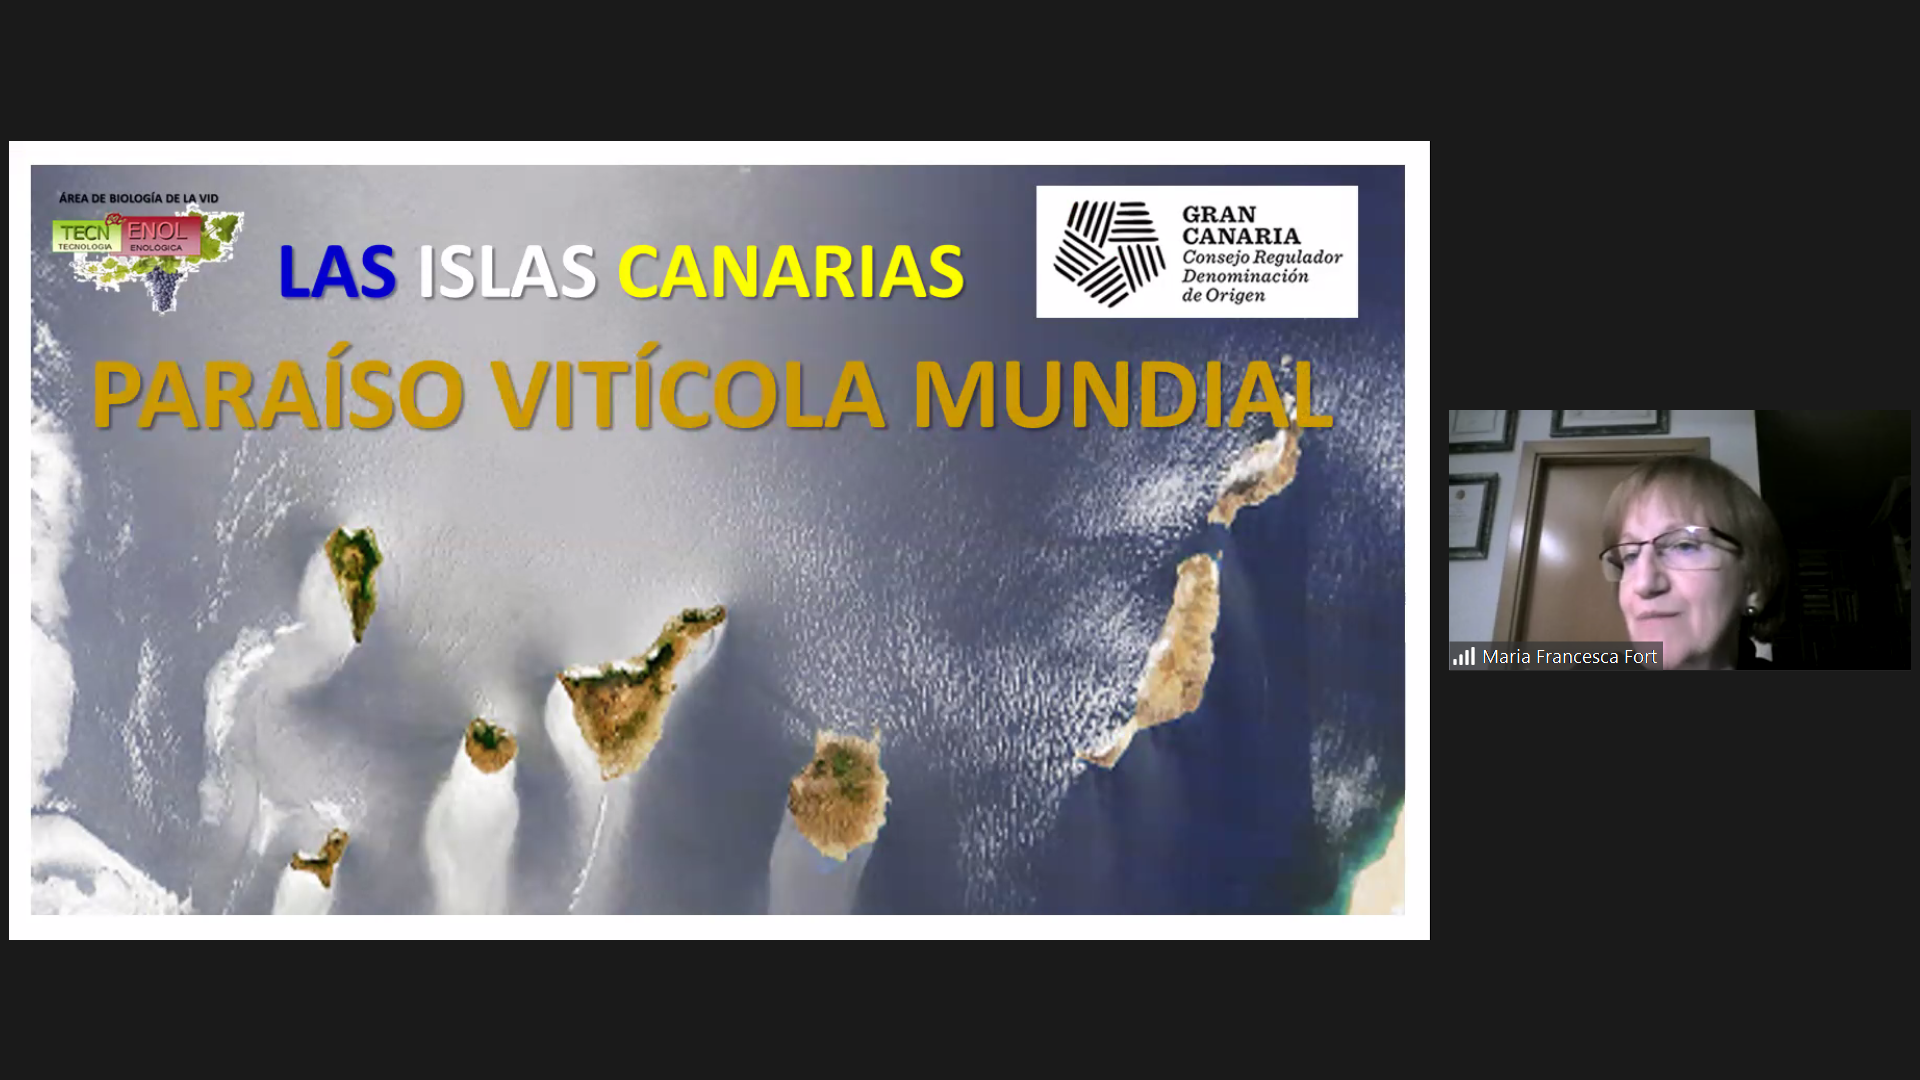 El Consejo Regulador de Vinos de Gran Canaria celebra un curso sobre los varietales de uva canarios